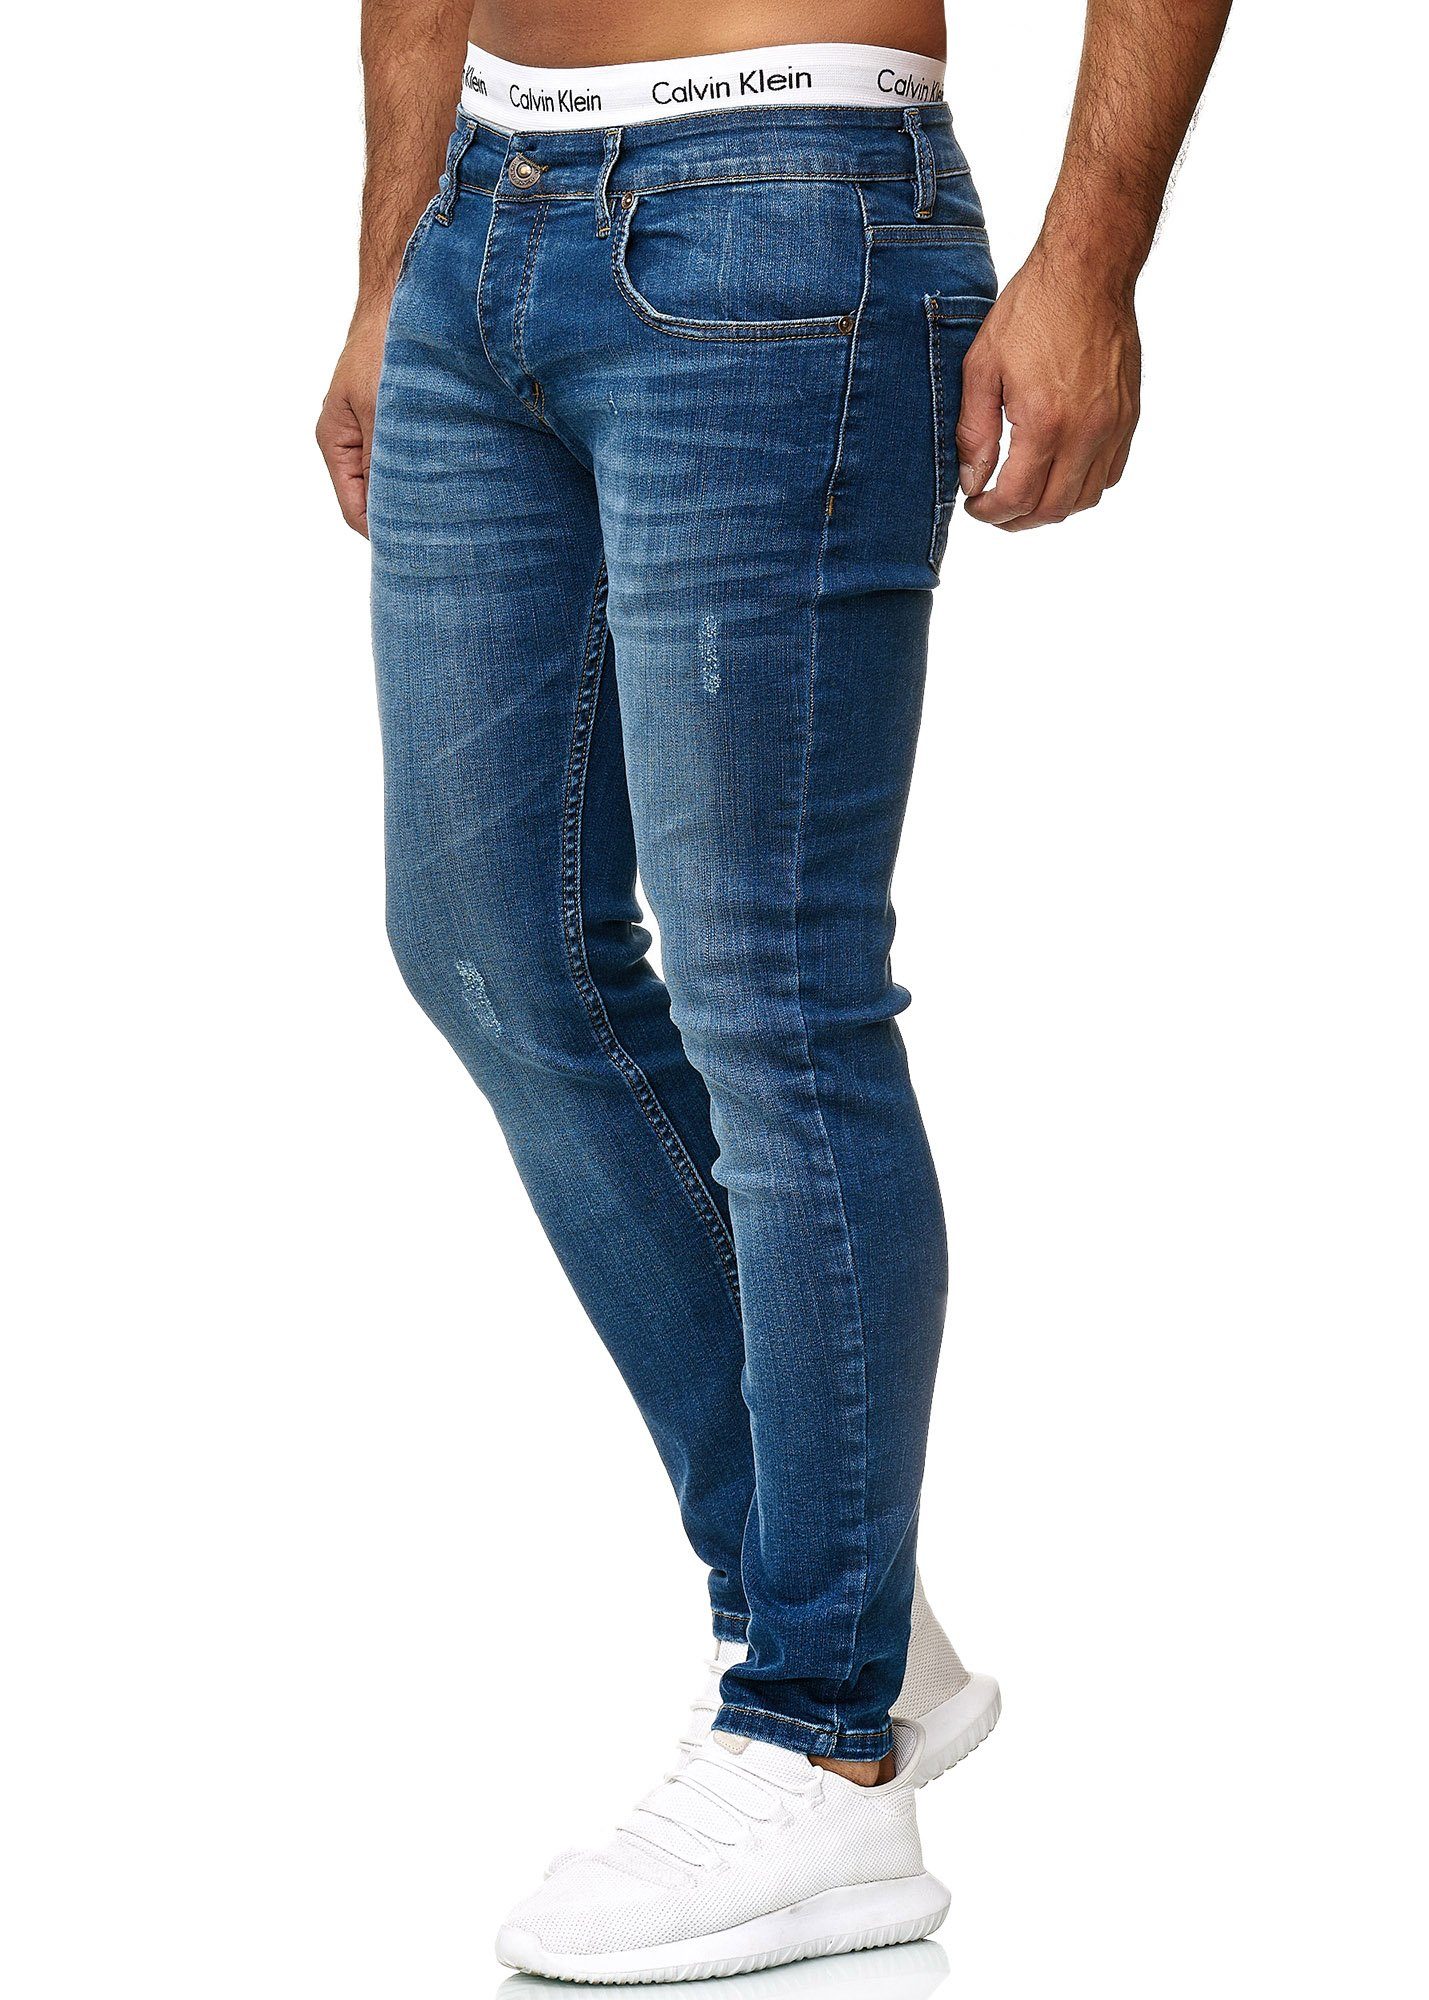 Blue Designer Code47 Jeans Fit Hose Herren Regular Light Skinny-fit-Jeans Skinny Basic Used Code47 614 Jeanshose